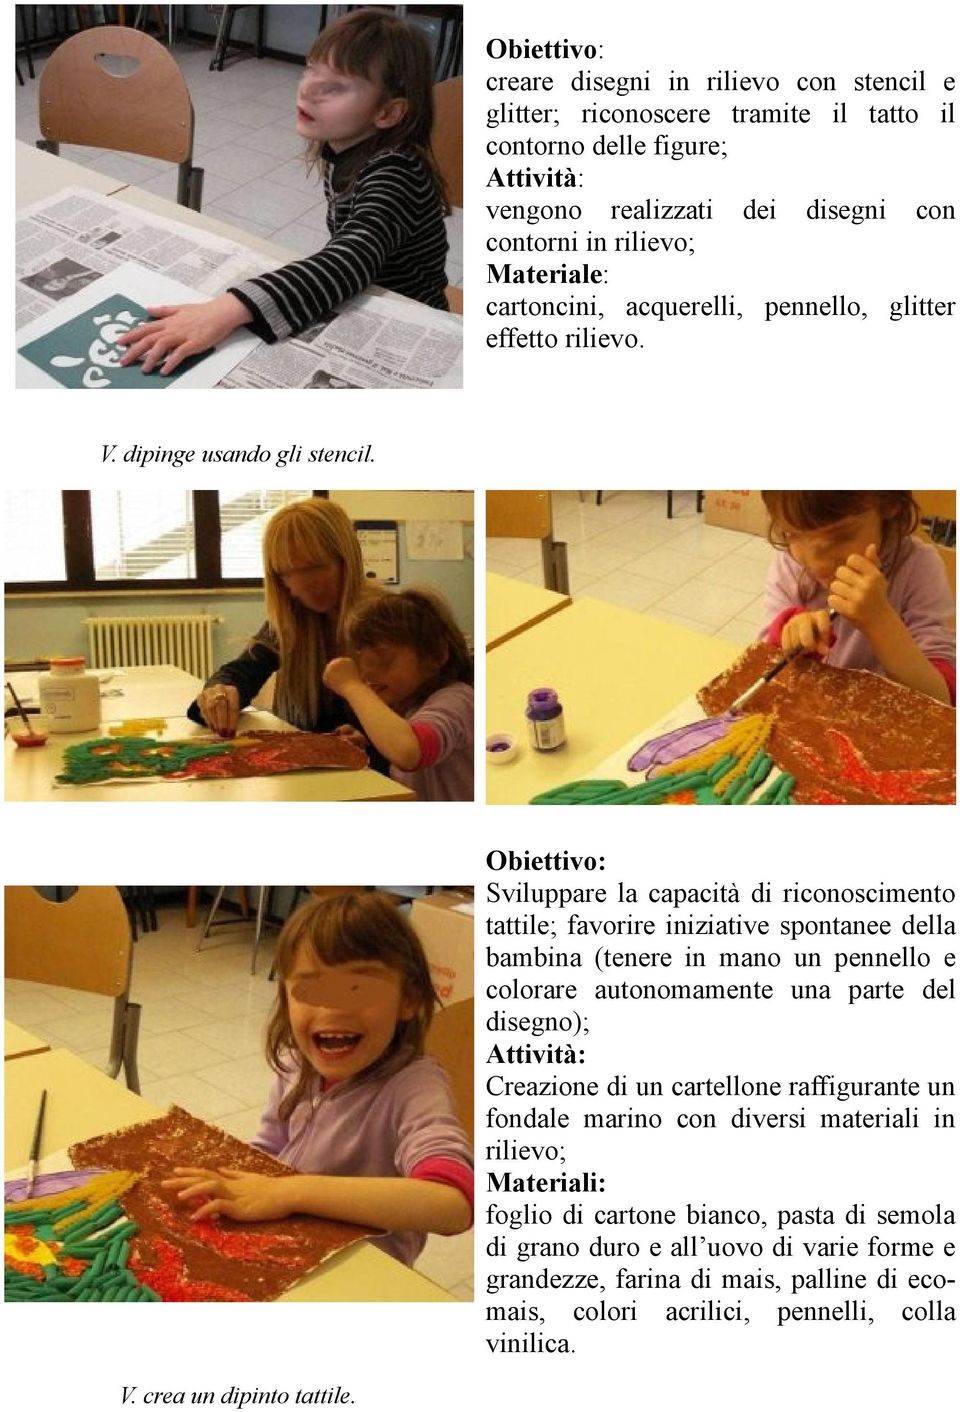 Sviluppare la capacità di riconoscimento tattile; favorire iniziative spontanee della bambina (tenere in mano un pennello e colorare autonomamente una parte del disegno);